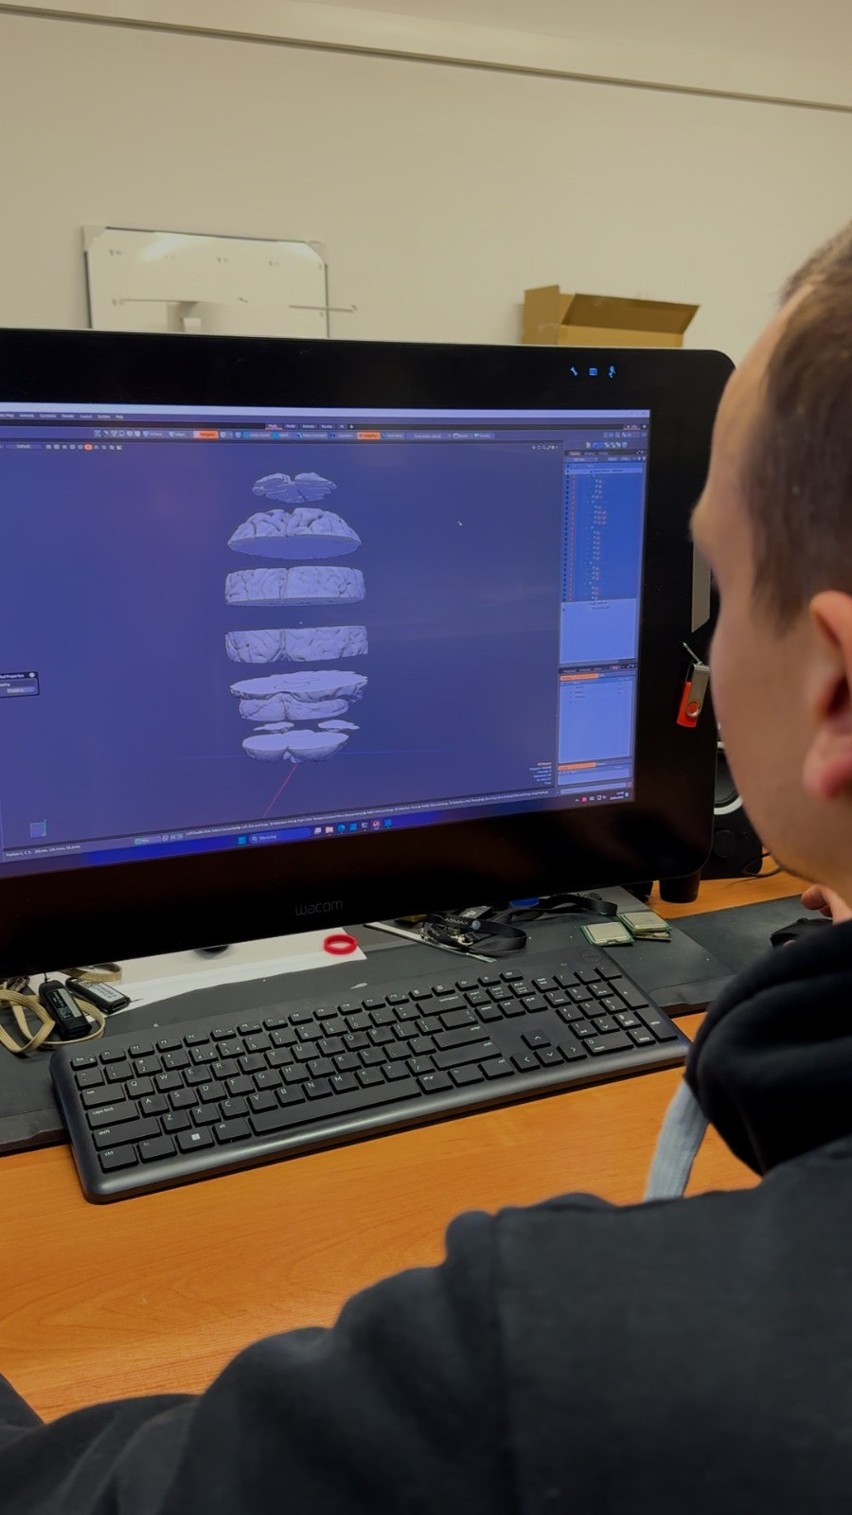 Mózg, serce i płuca. Studenci KUL uczą się na modelach narządów wydrukowanych w technice 3D